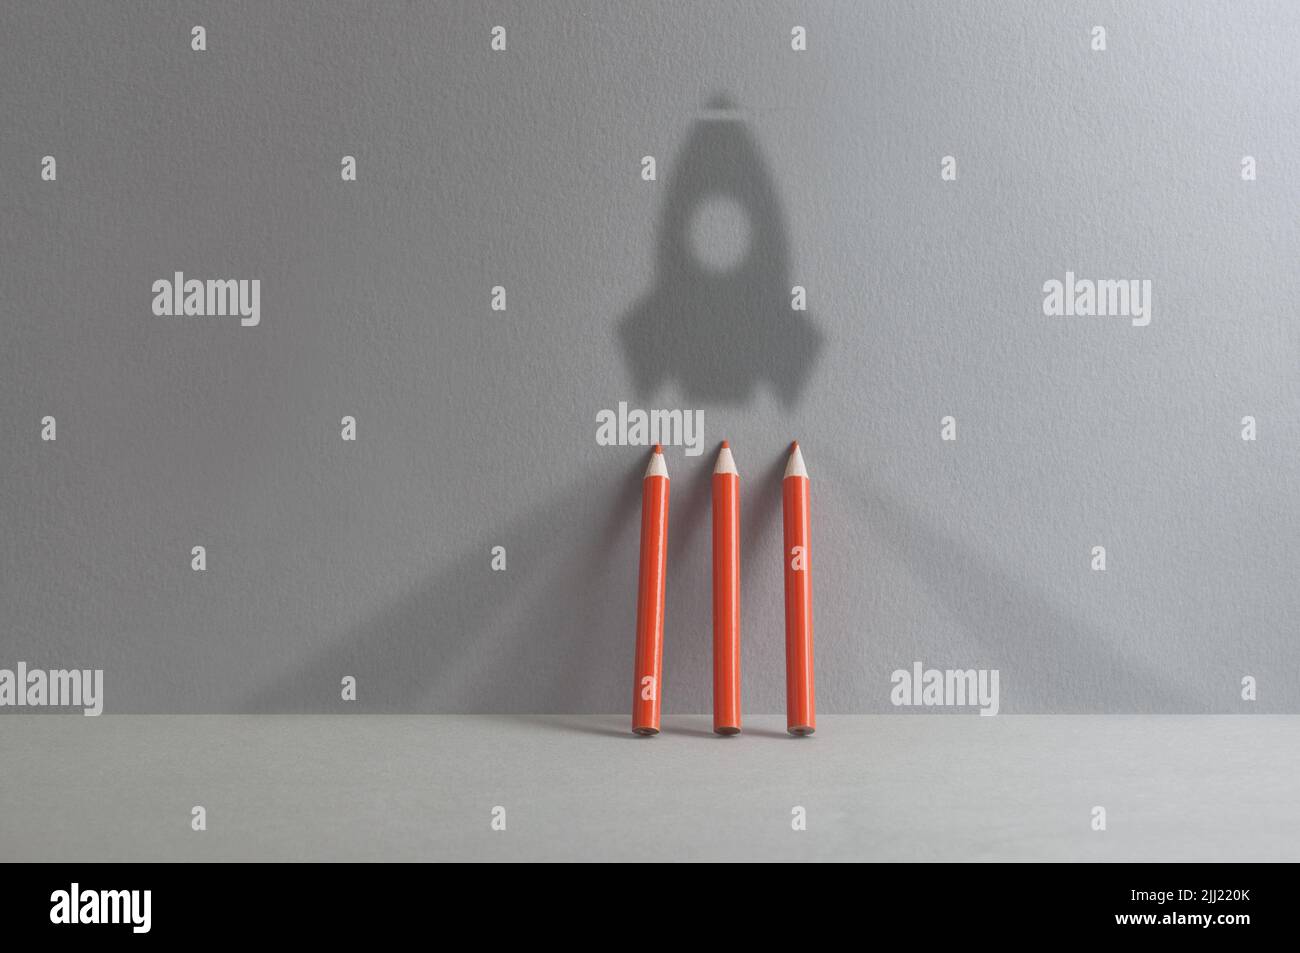 Back to school, success; realising dreams concept, rocket shadow with pencils Stock Photo